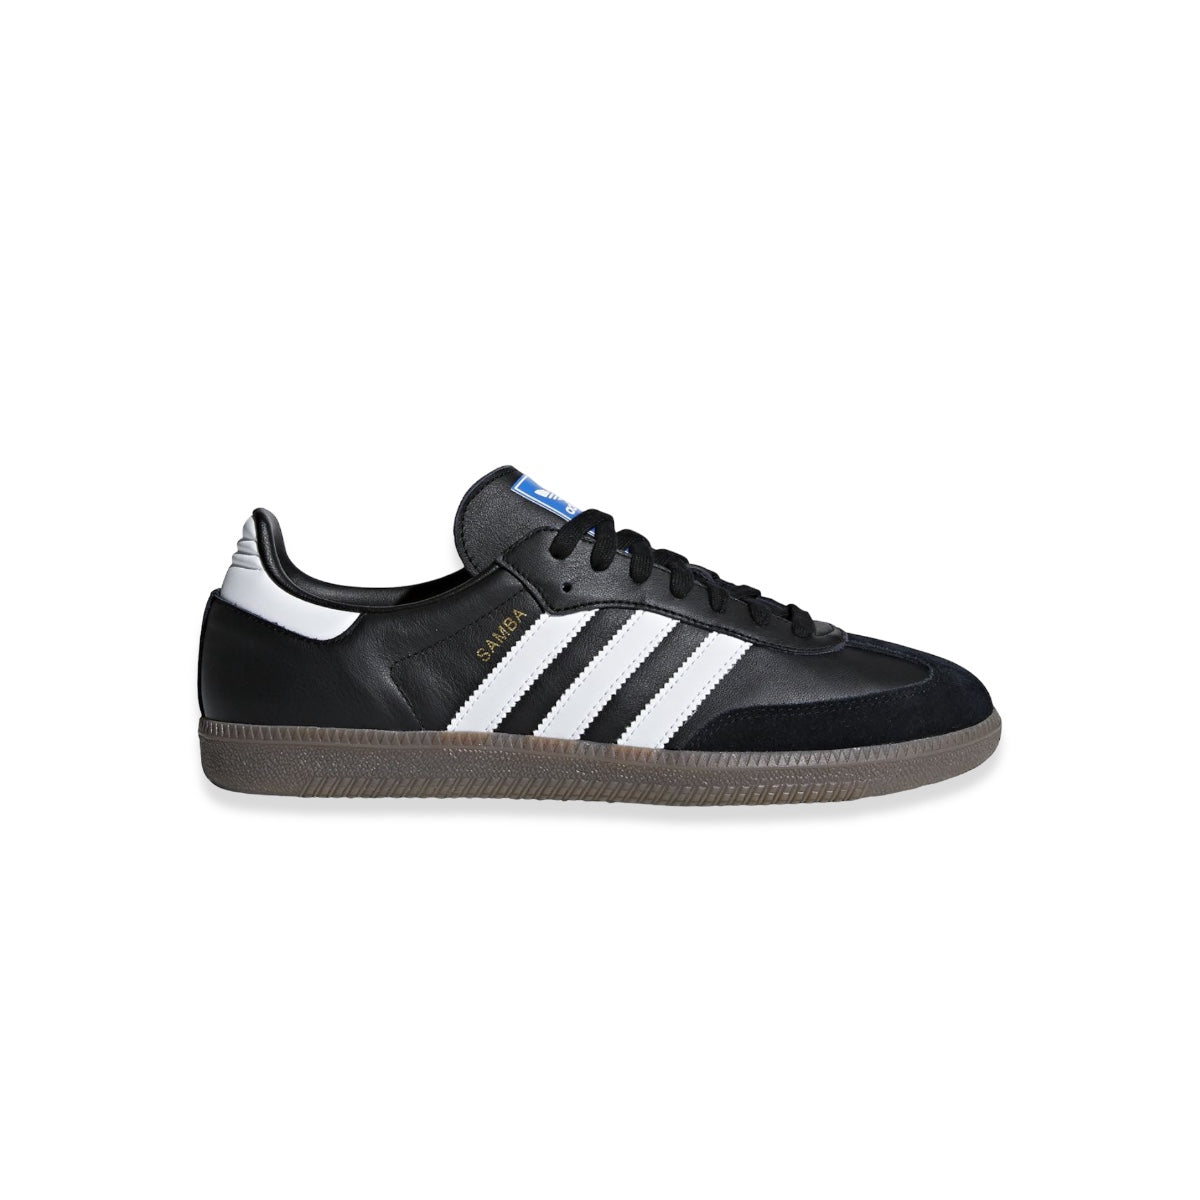 Adidas - Samba OG Black White Sneakers